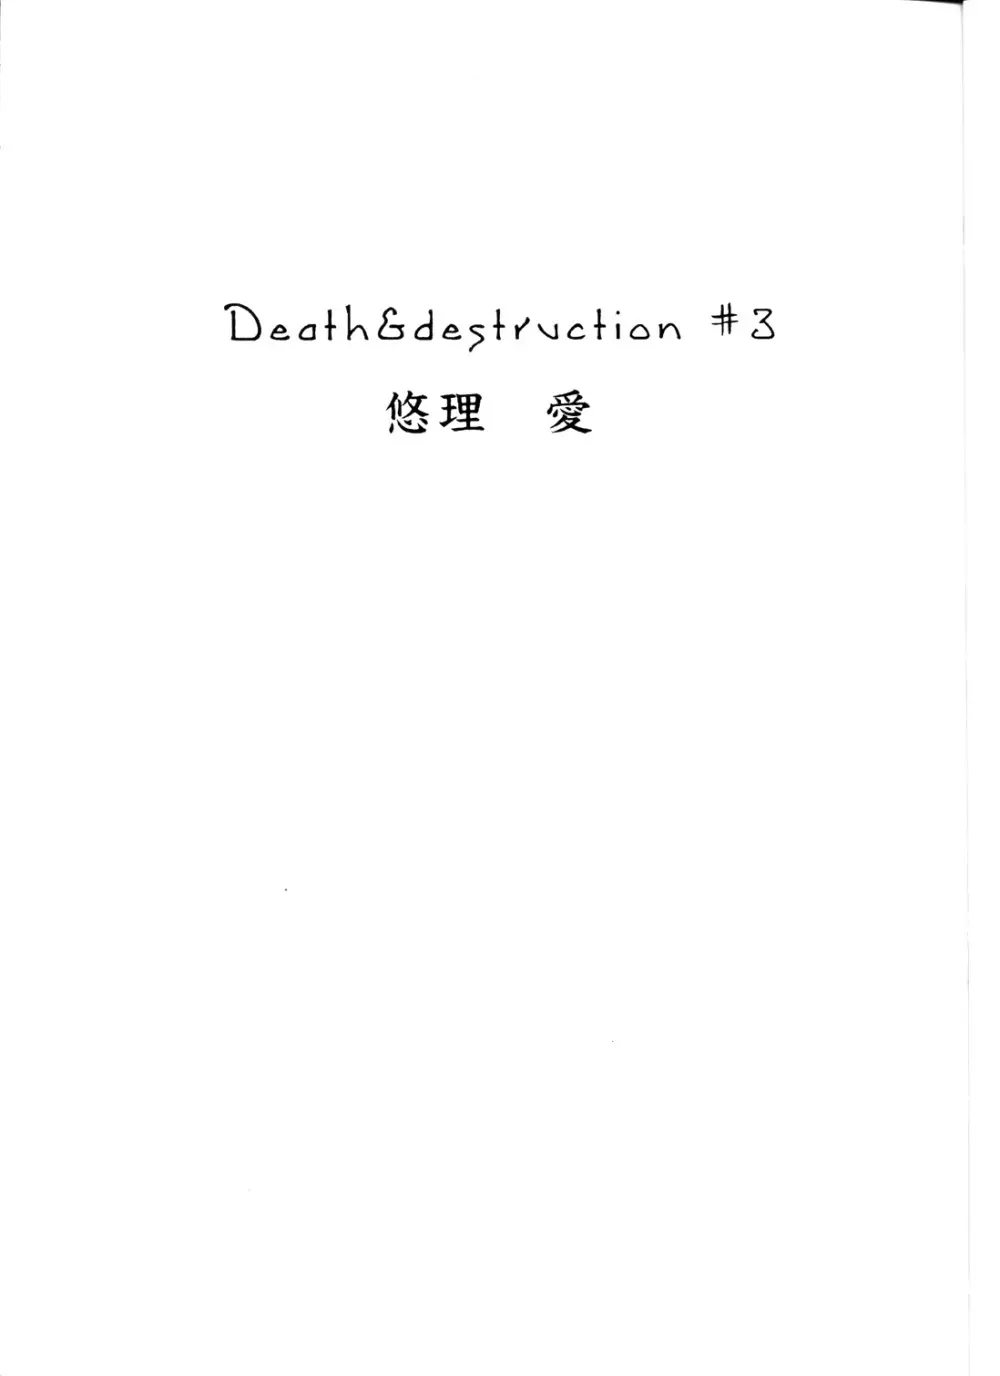 Death & Destruction #3 Page.3